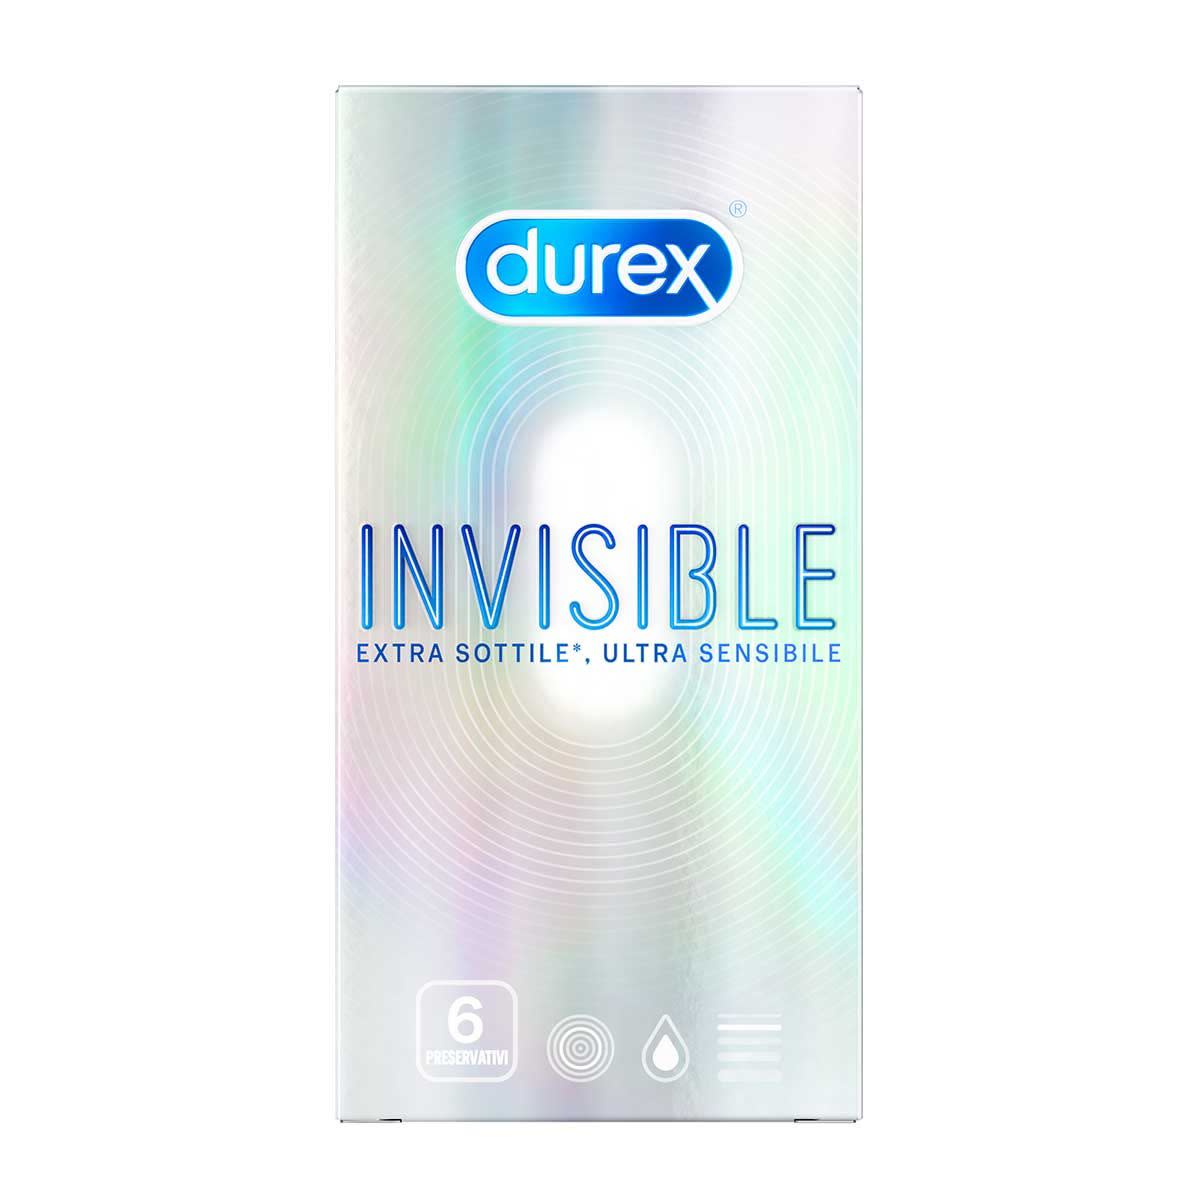 970335232 - Durex Invisible 6 Profilattici - 7862905_3.jpg